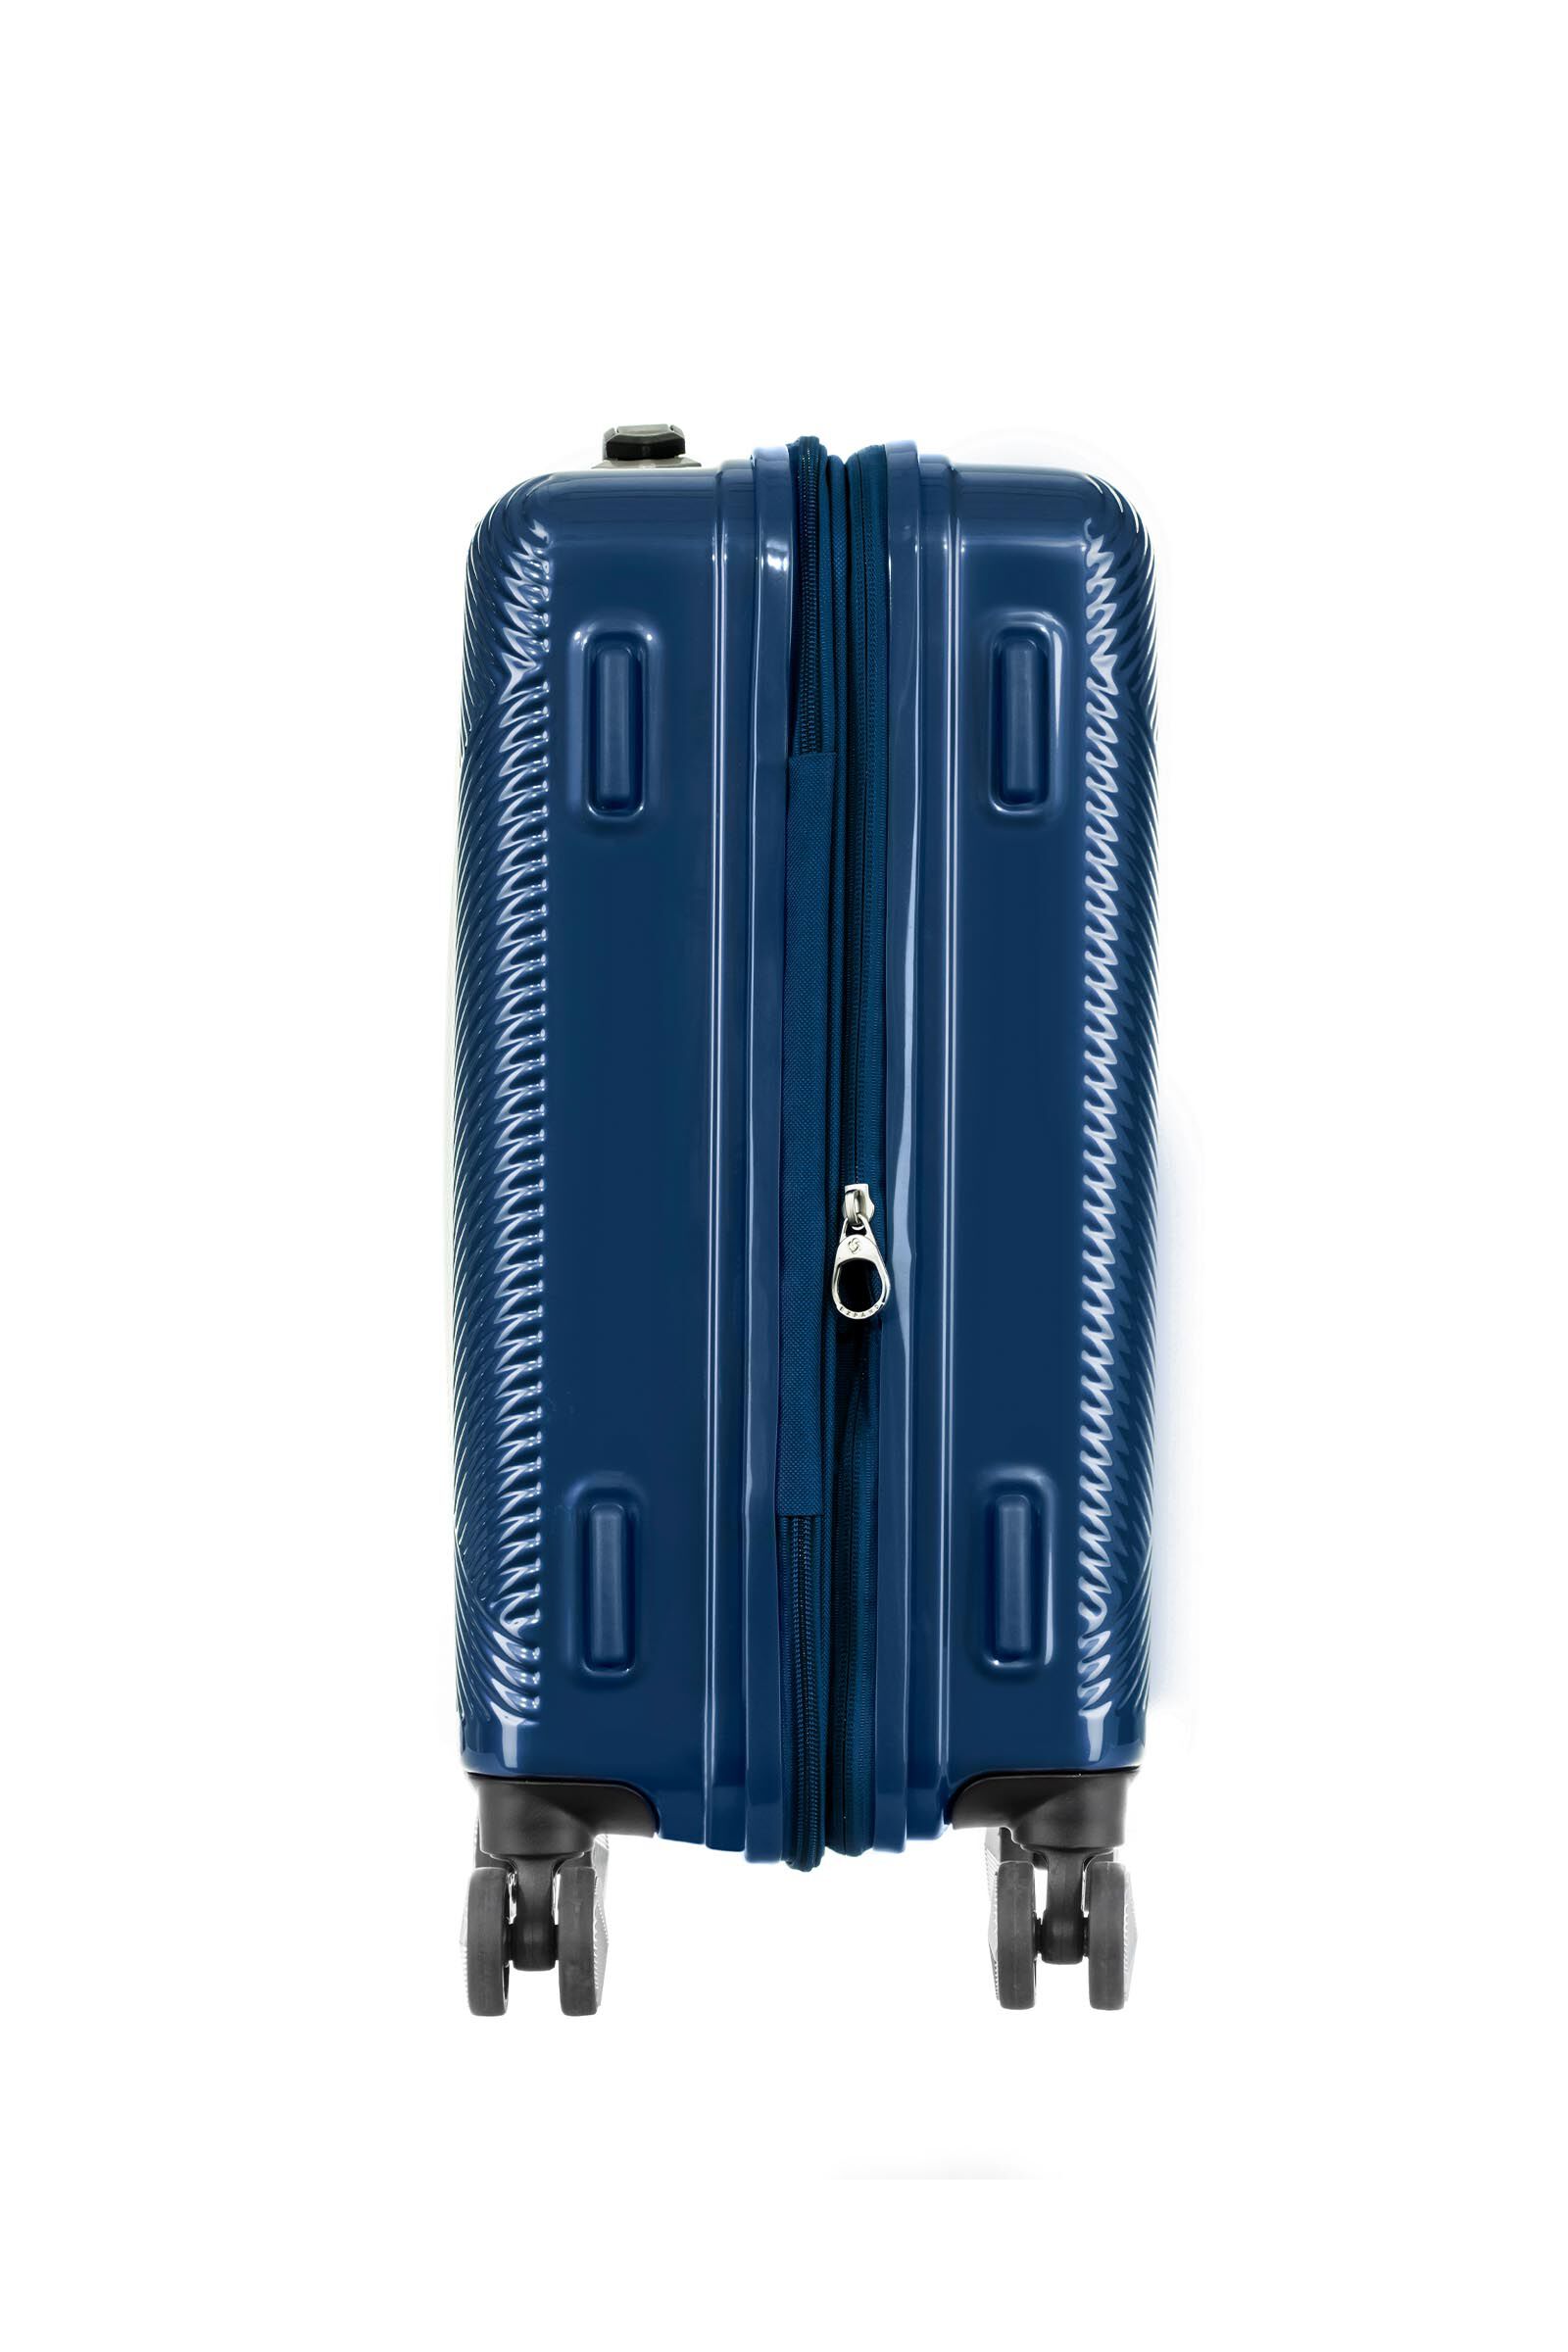 サムソナイト スーツケース ヴォラント Volant 55 36L 2.9kg